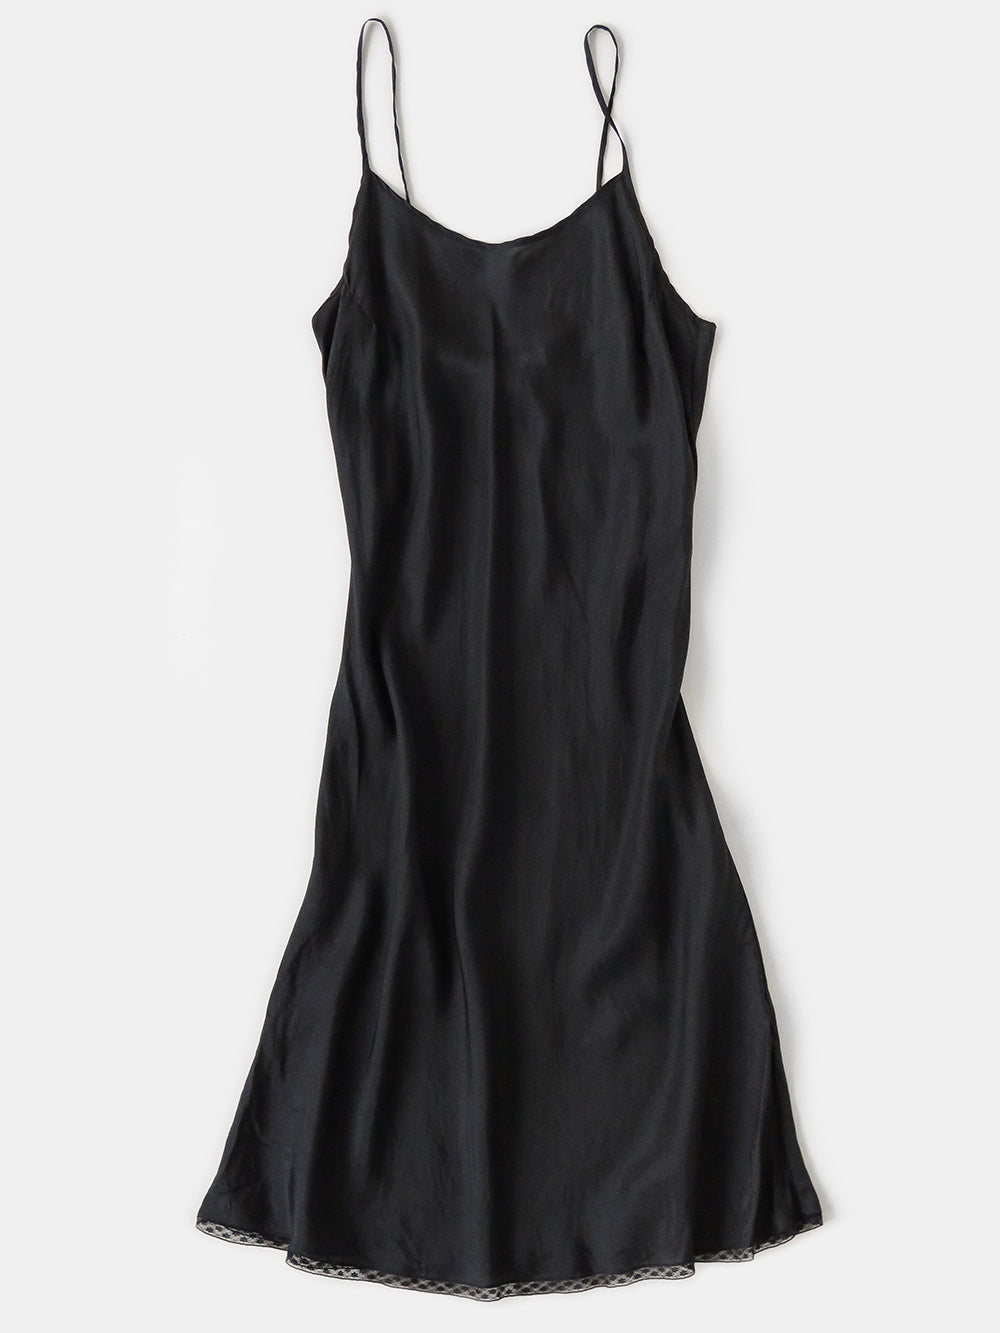 Erica Tanov  Greta Silk Slip Dress - Black